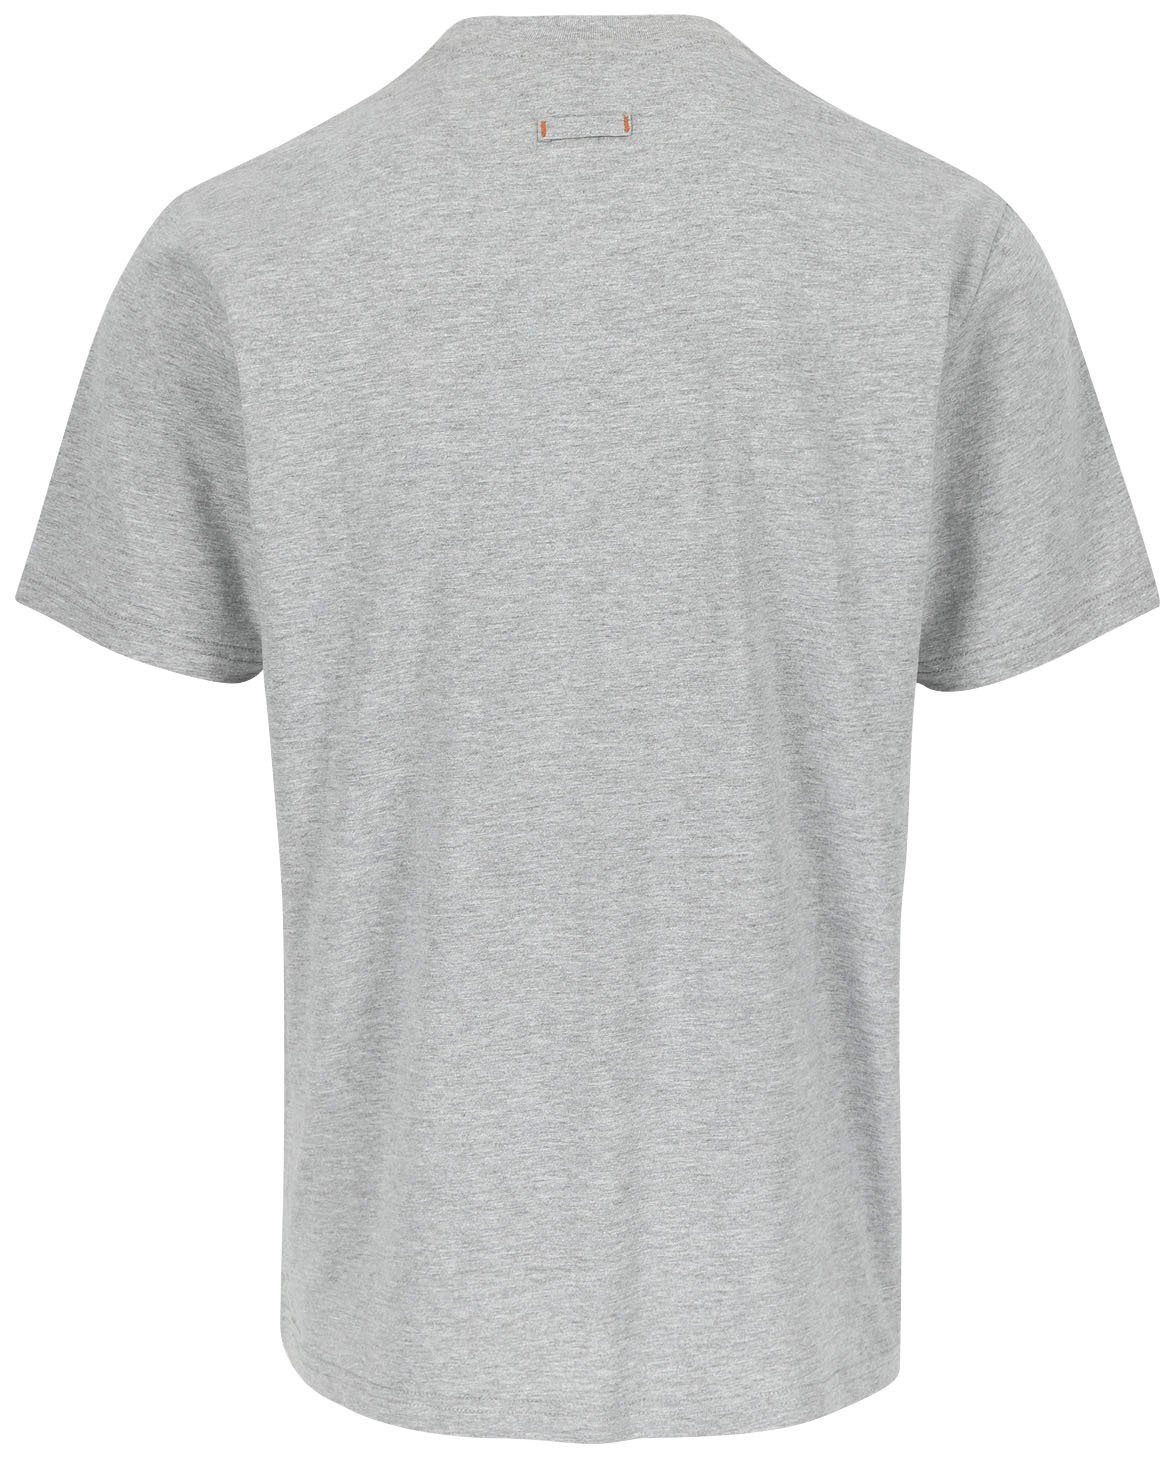 Herock®-Aufdruck, Rundhals, angenehmes Herock T-Shirt mit ENI Tragegefühl Baumwolle,